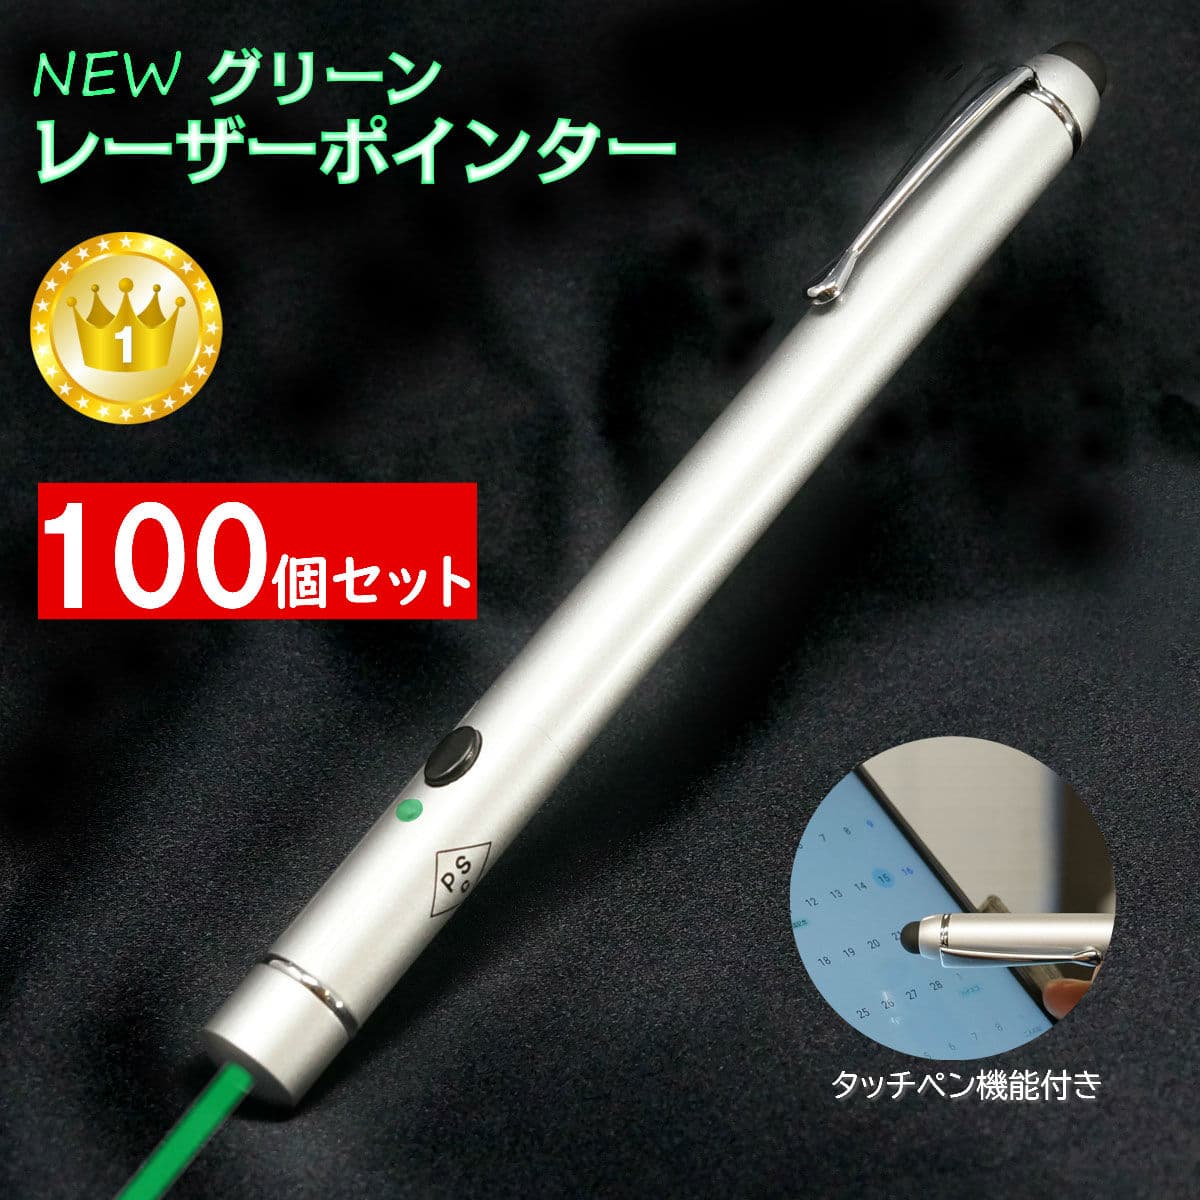 【100個セット】 グリーン レーザーポインター 8倍明るい 緑 レーザー タッチペン付 RB-18G 1年間品質保証 PSCマーク付 安全規格認証品 送料無料 tkh